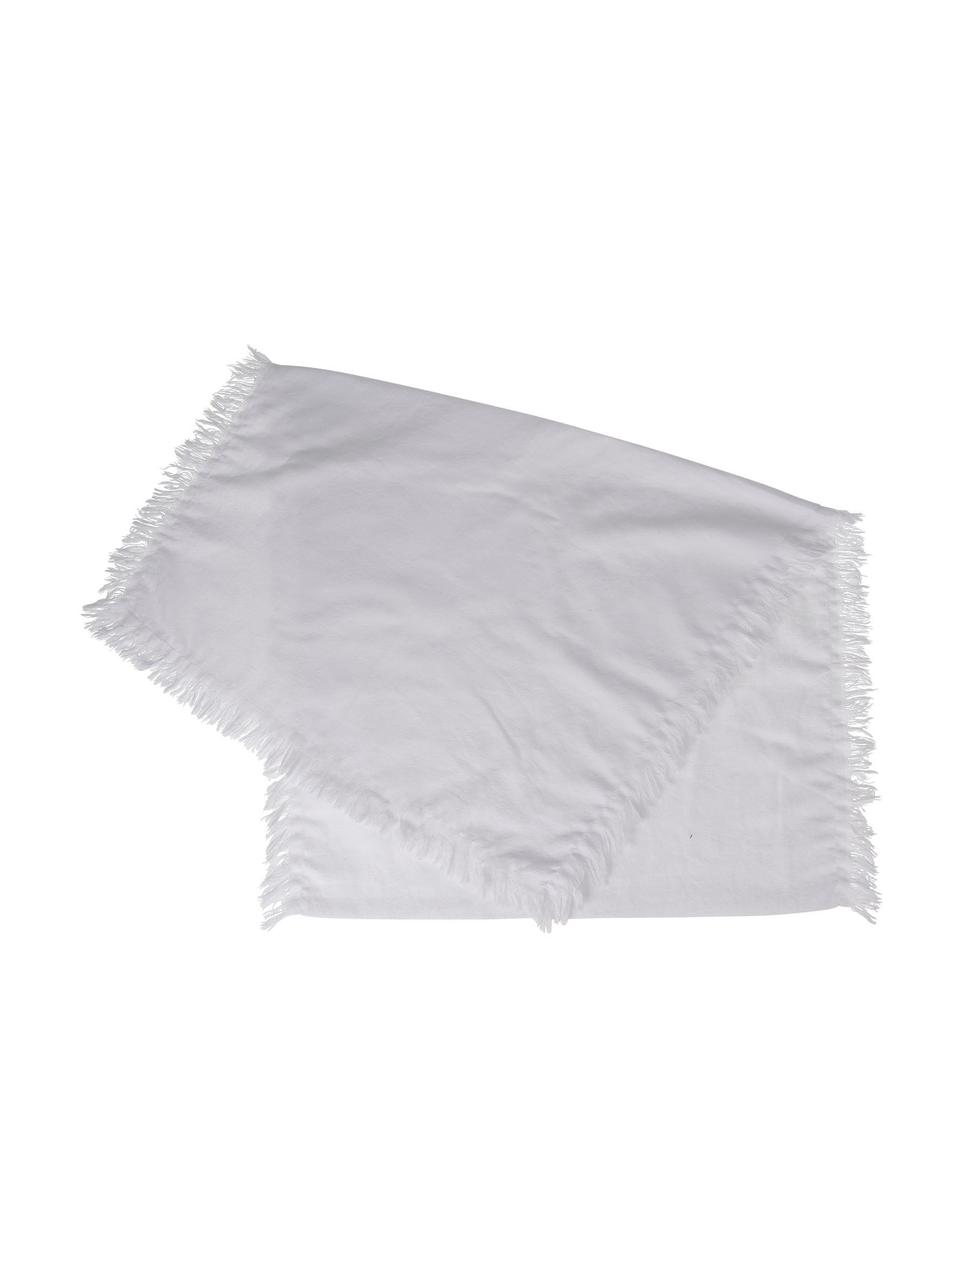 Bieżnik z bawełny z frędzlami Nalia, 100% bawełna, Biały, S 50 x D 160 cm